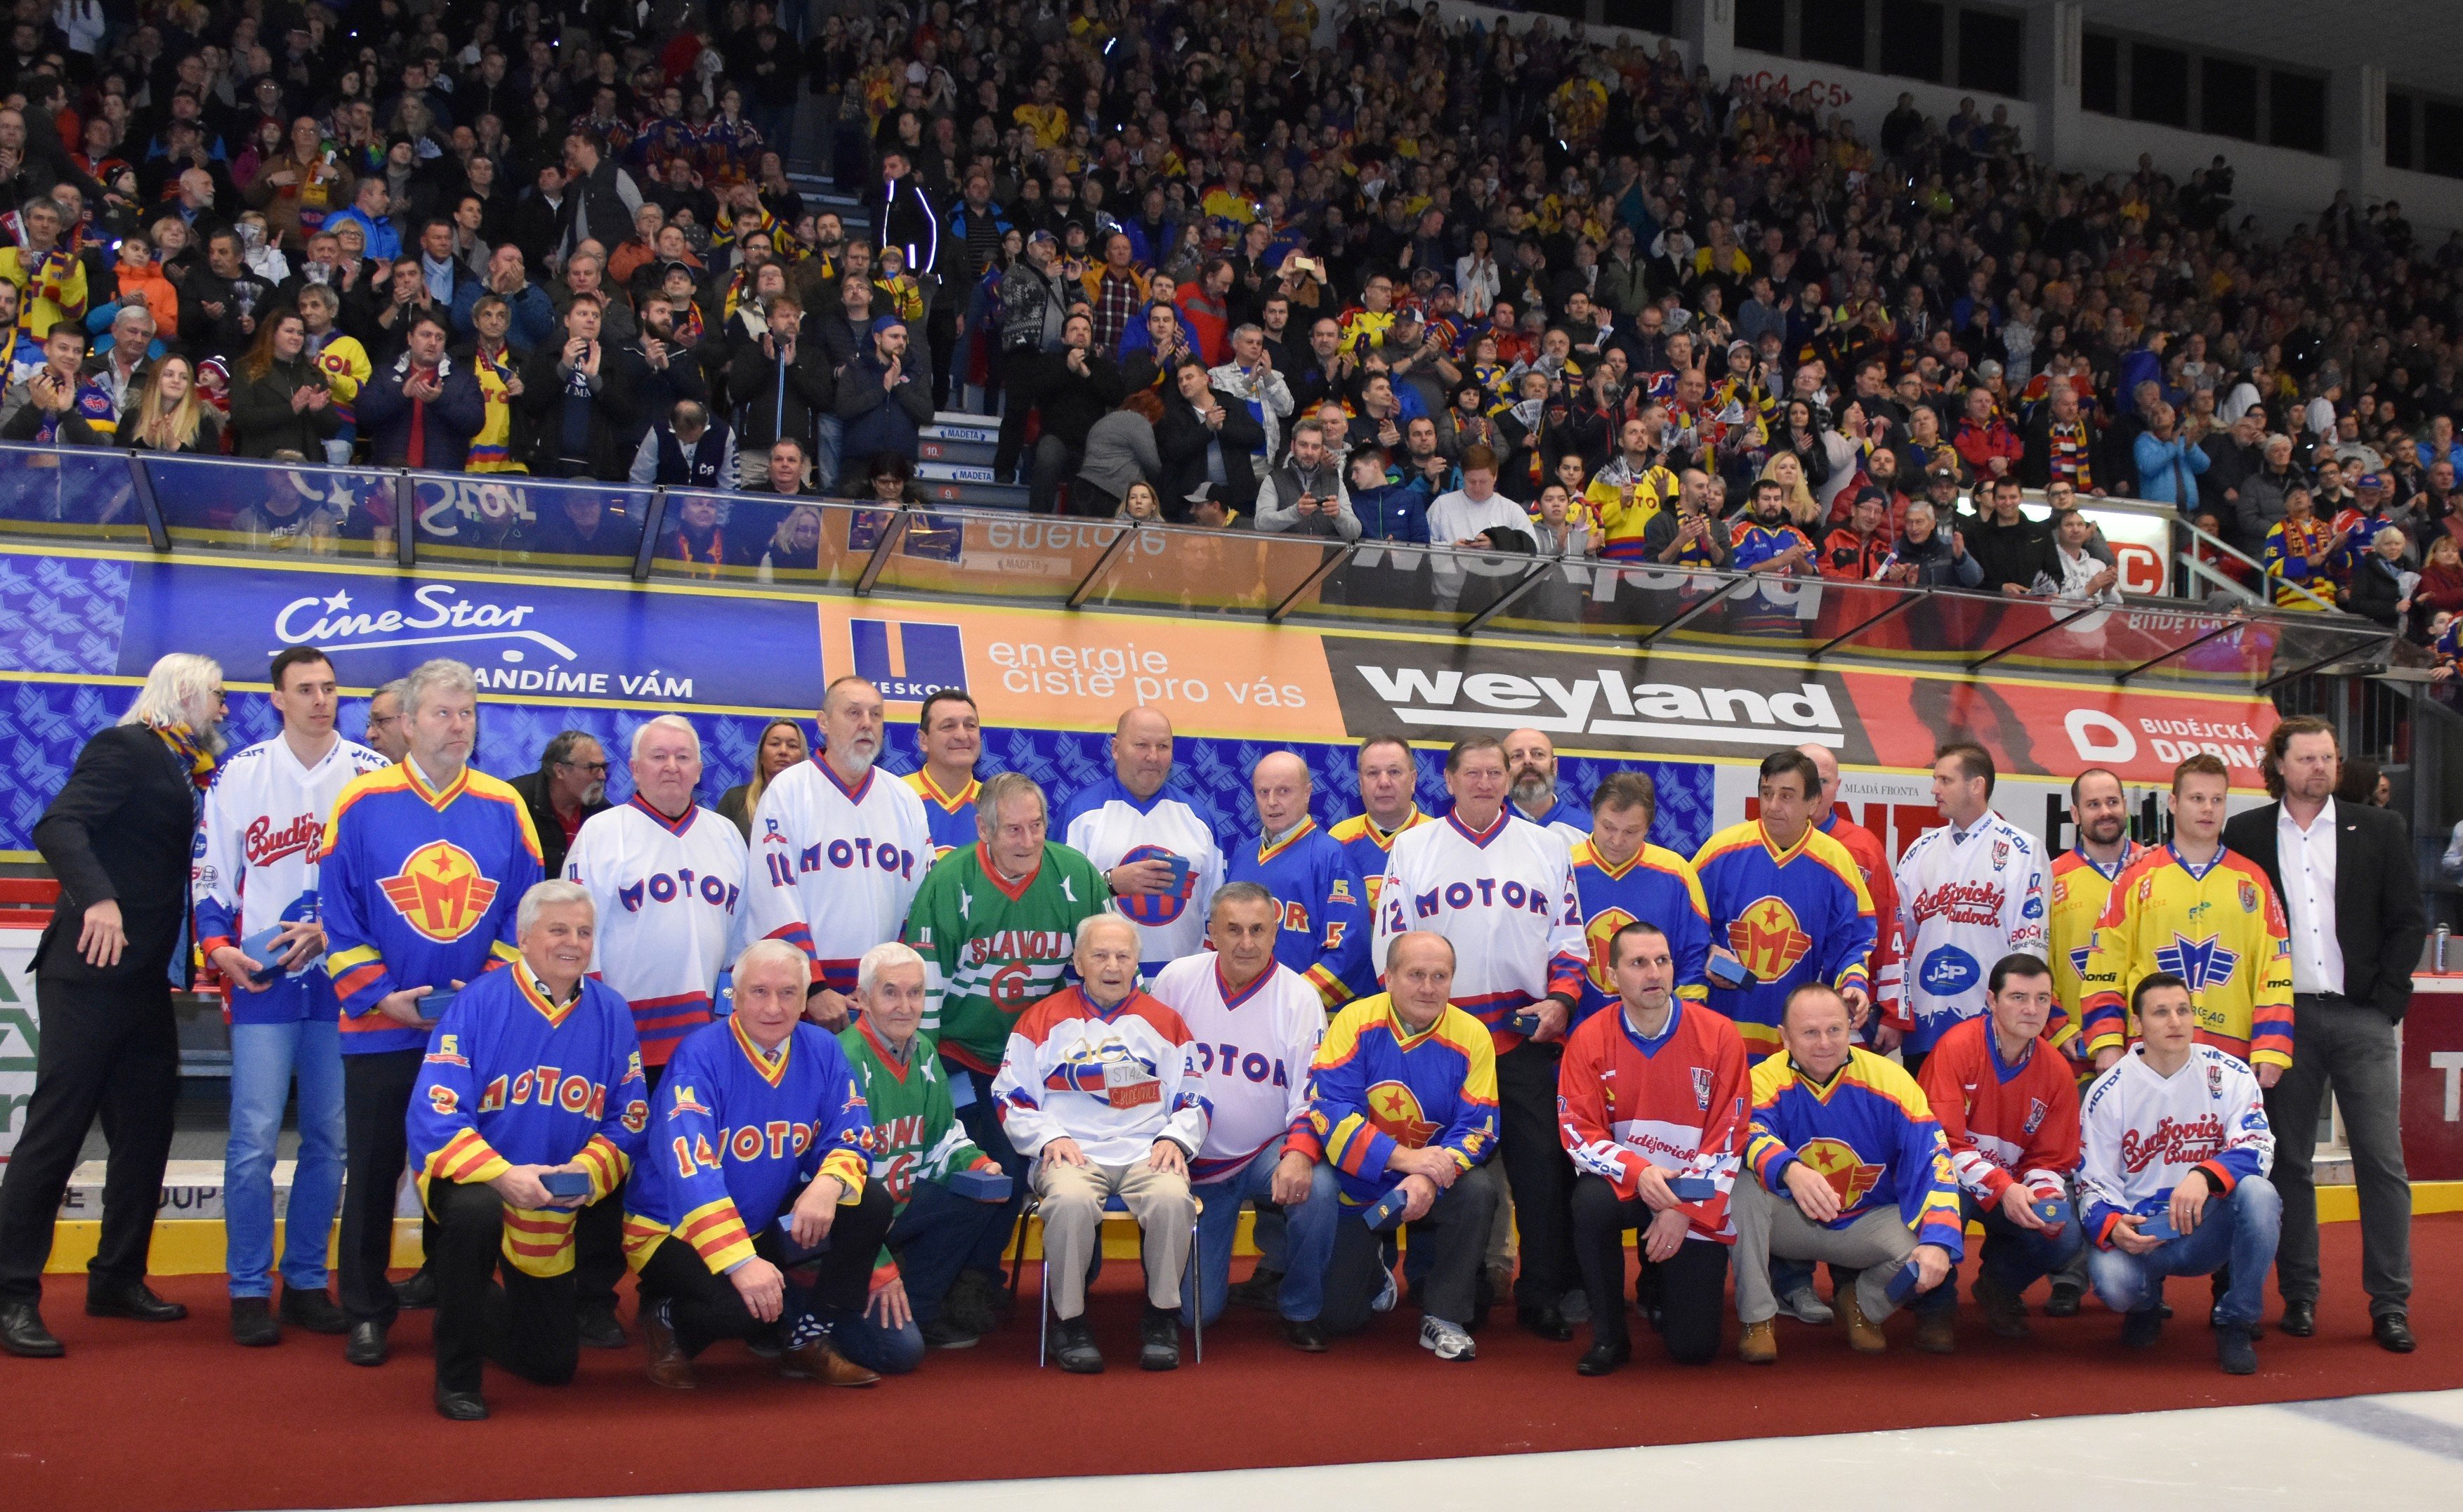 Po celý rok českobudějovický Motor připomíná 90. výročí hokeje v jihočeském krajském městě, například retro zápasem, na kterém se sešli bývalí hráči